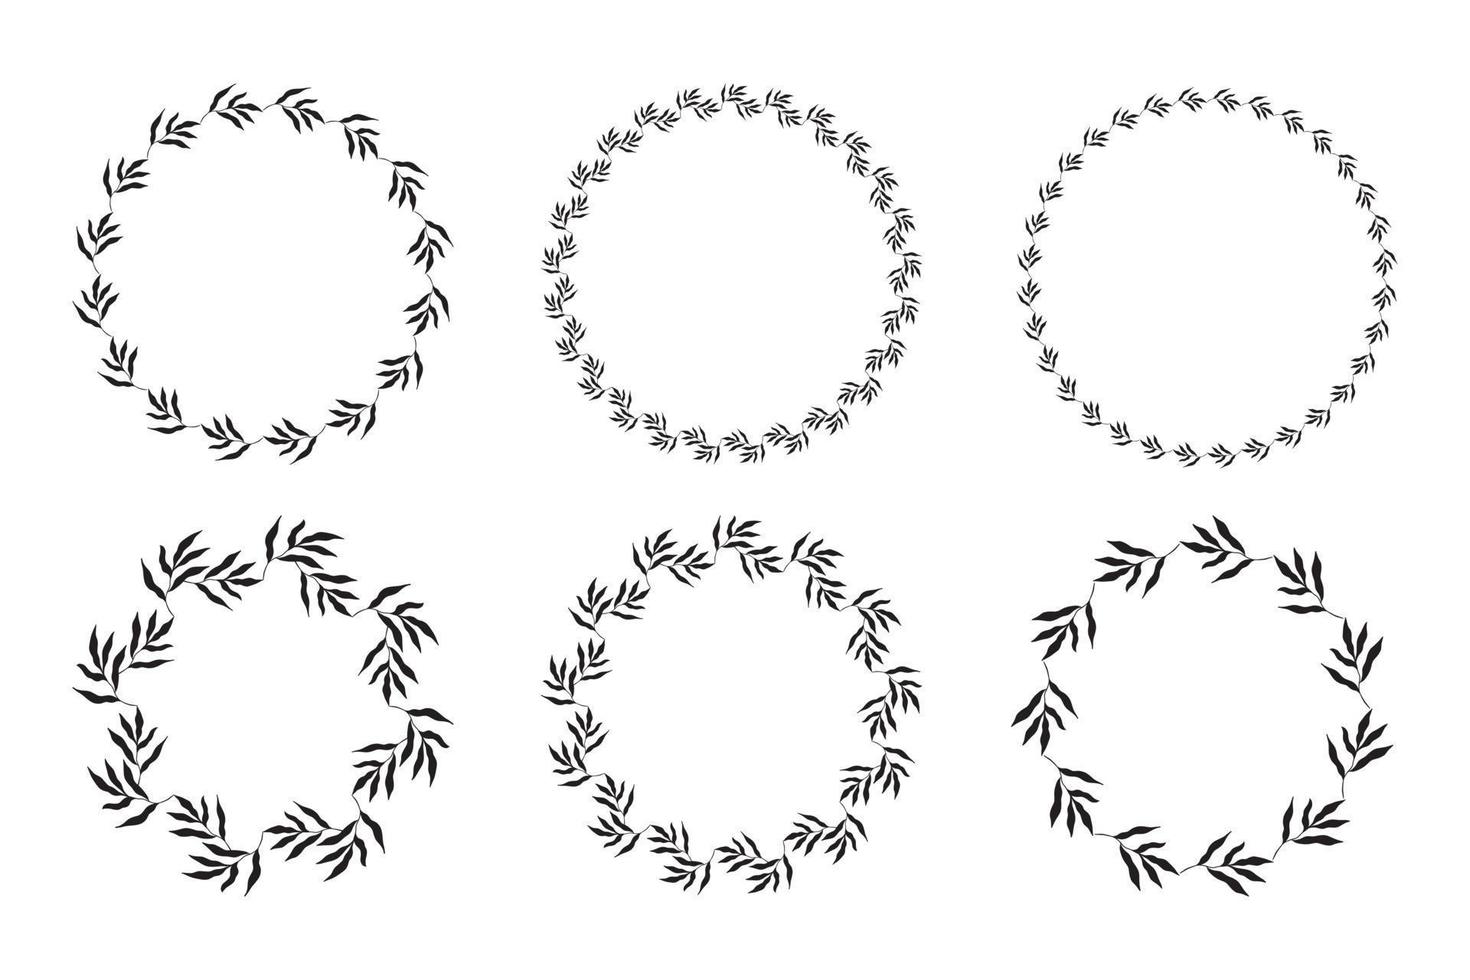 illustratie van een verzameling van diverse cirkelvormige zwarte frames gemaakt van planten op een witte geïsoleerde achtergrond vector